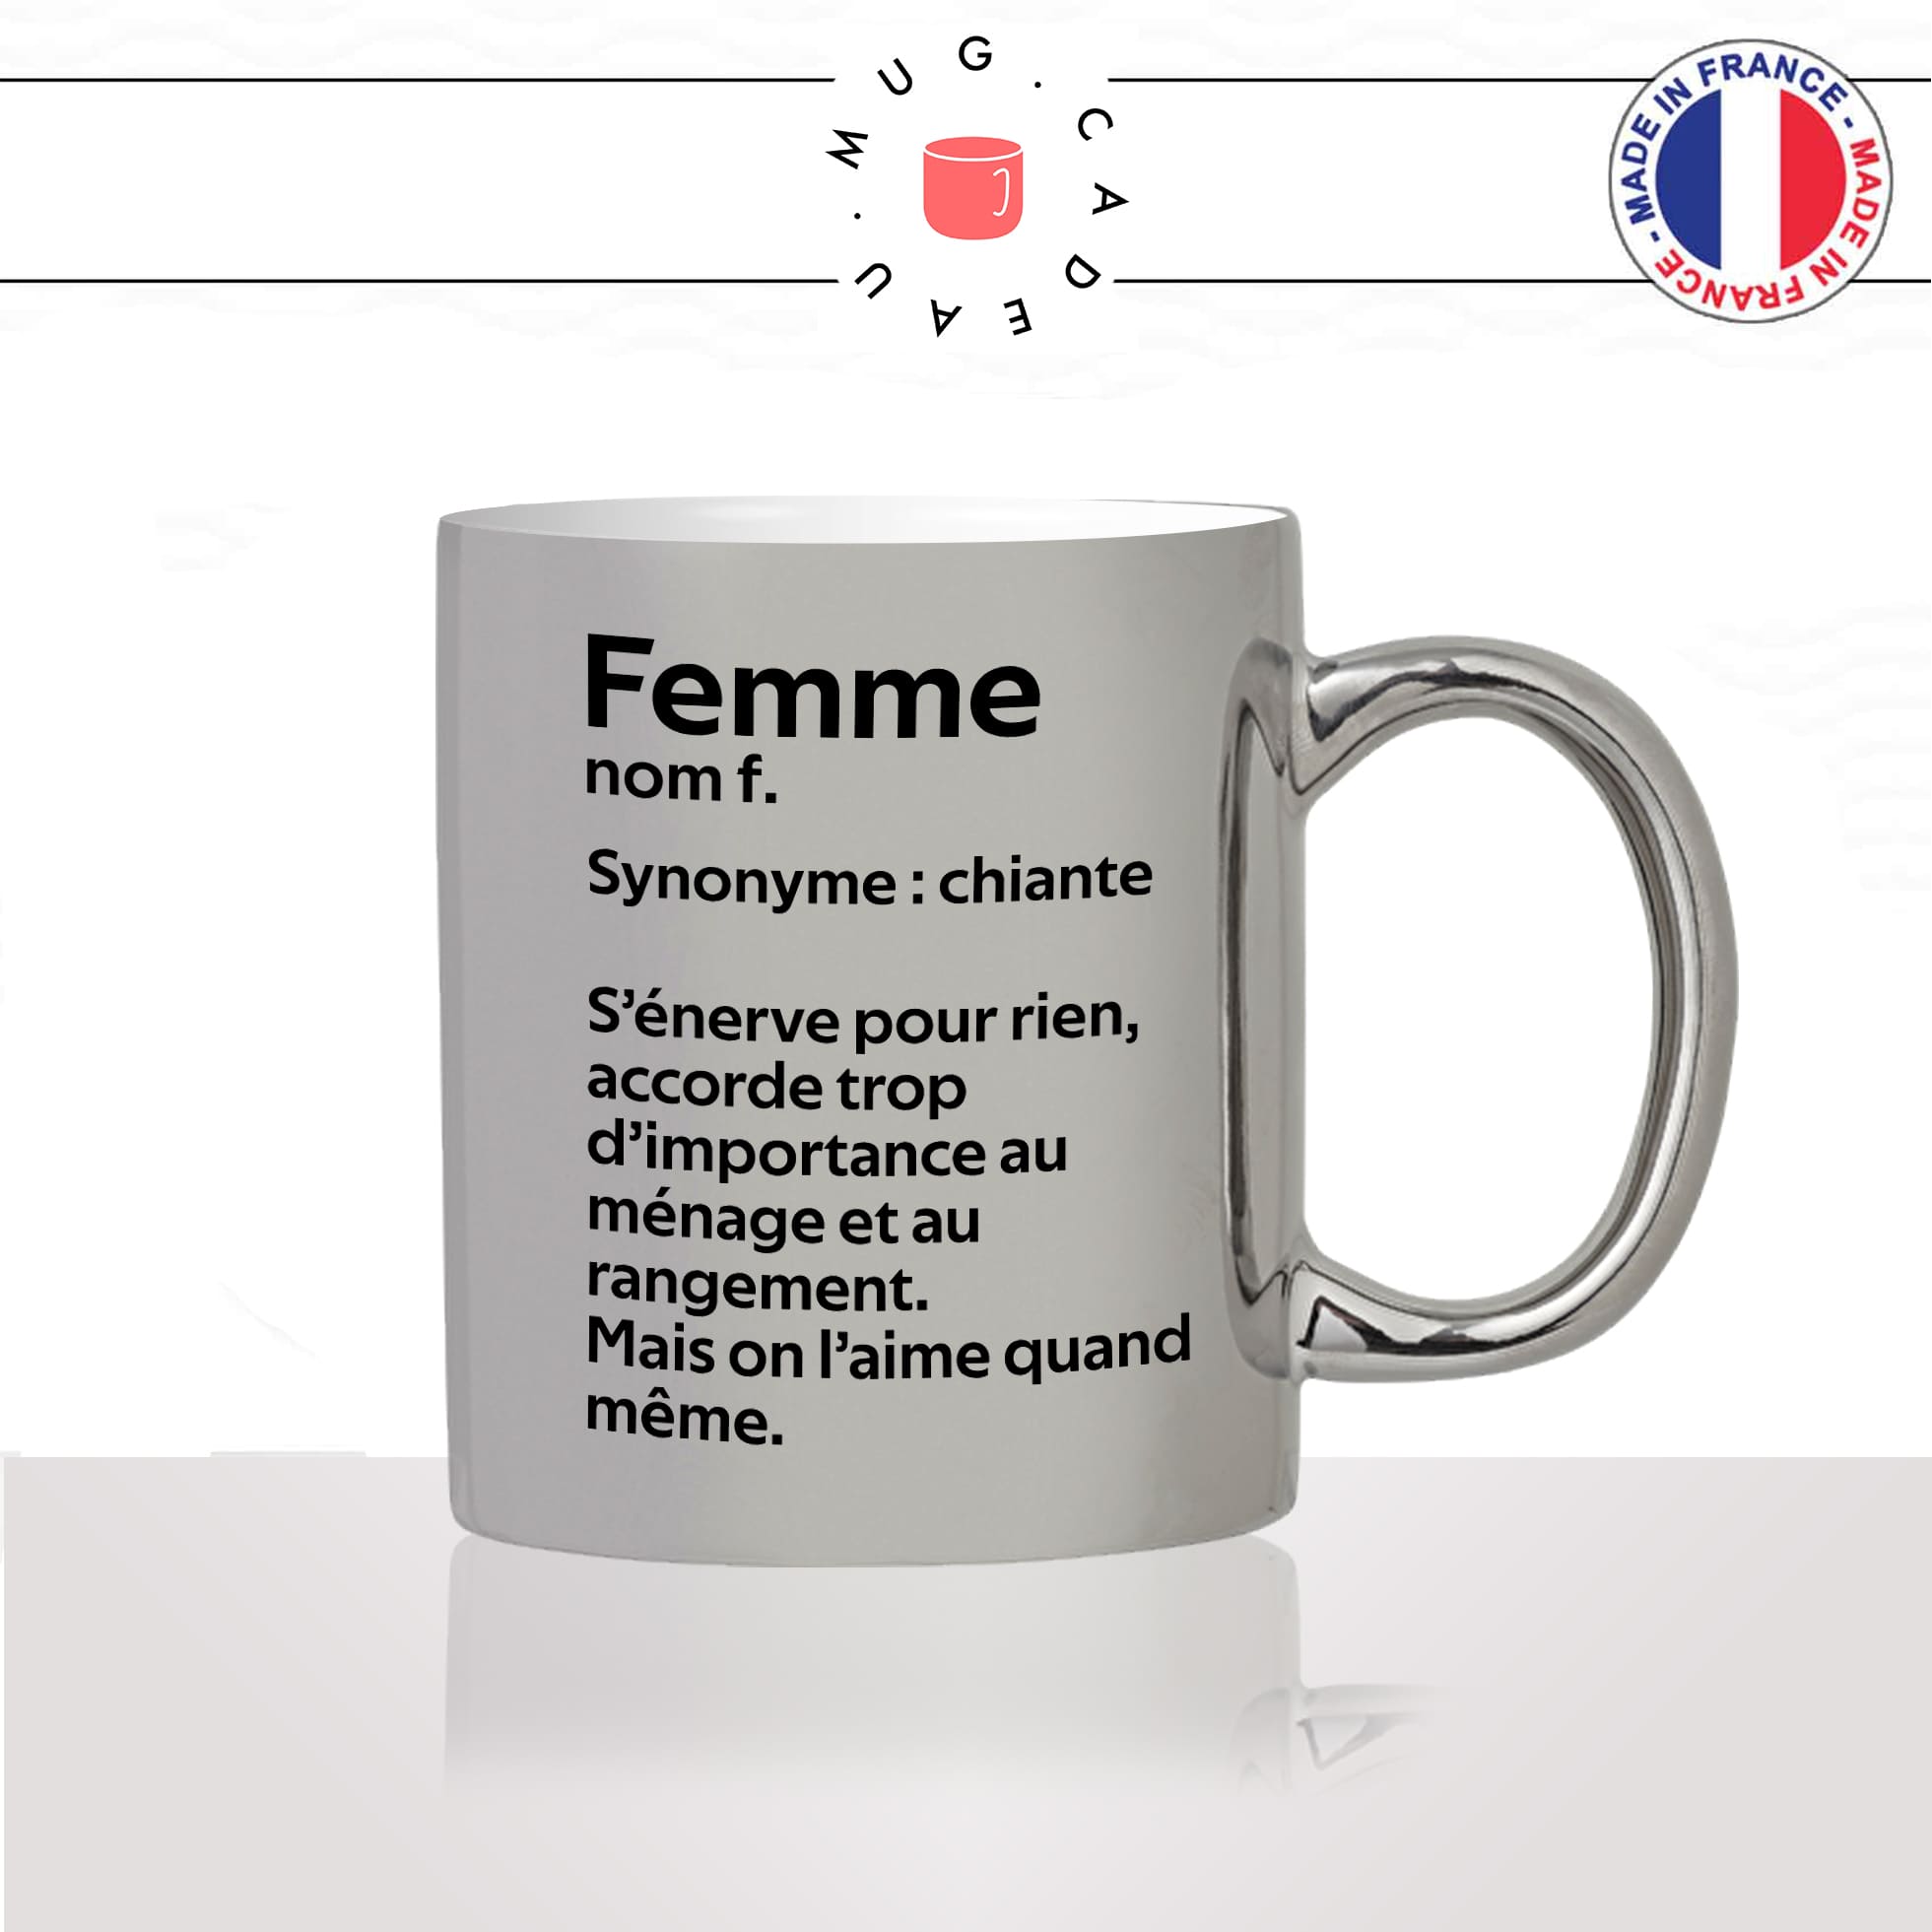 mug-tasse-argenté-argent-gris-silver-femme-définition-synonyme-chiante-ménage-on-laime-homme-couple-maman-humour-fun-idée-cadeau2